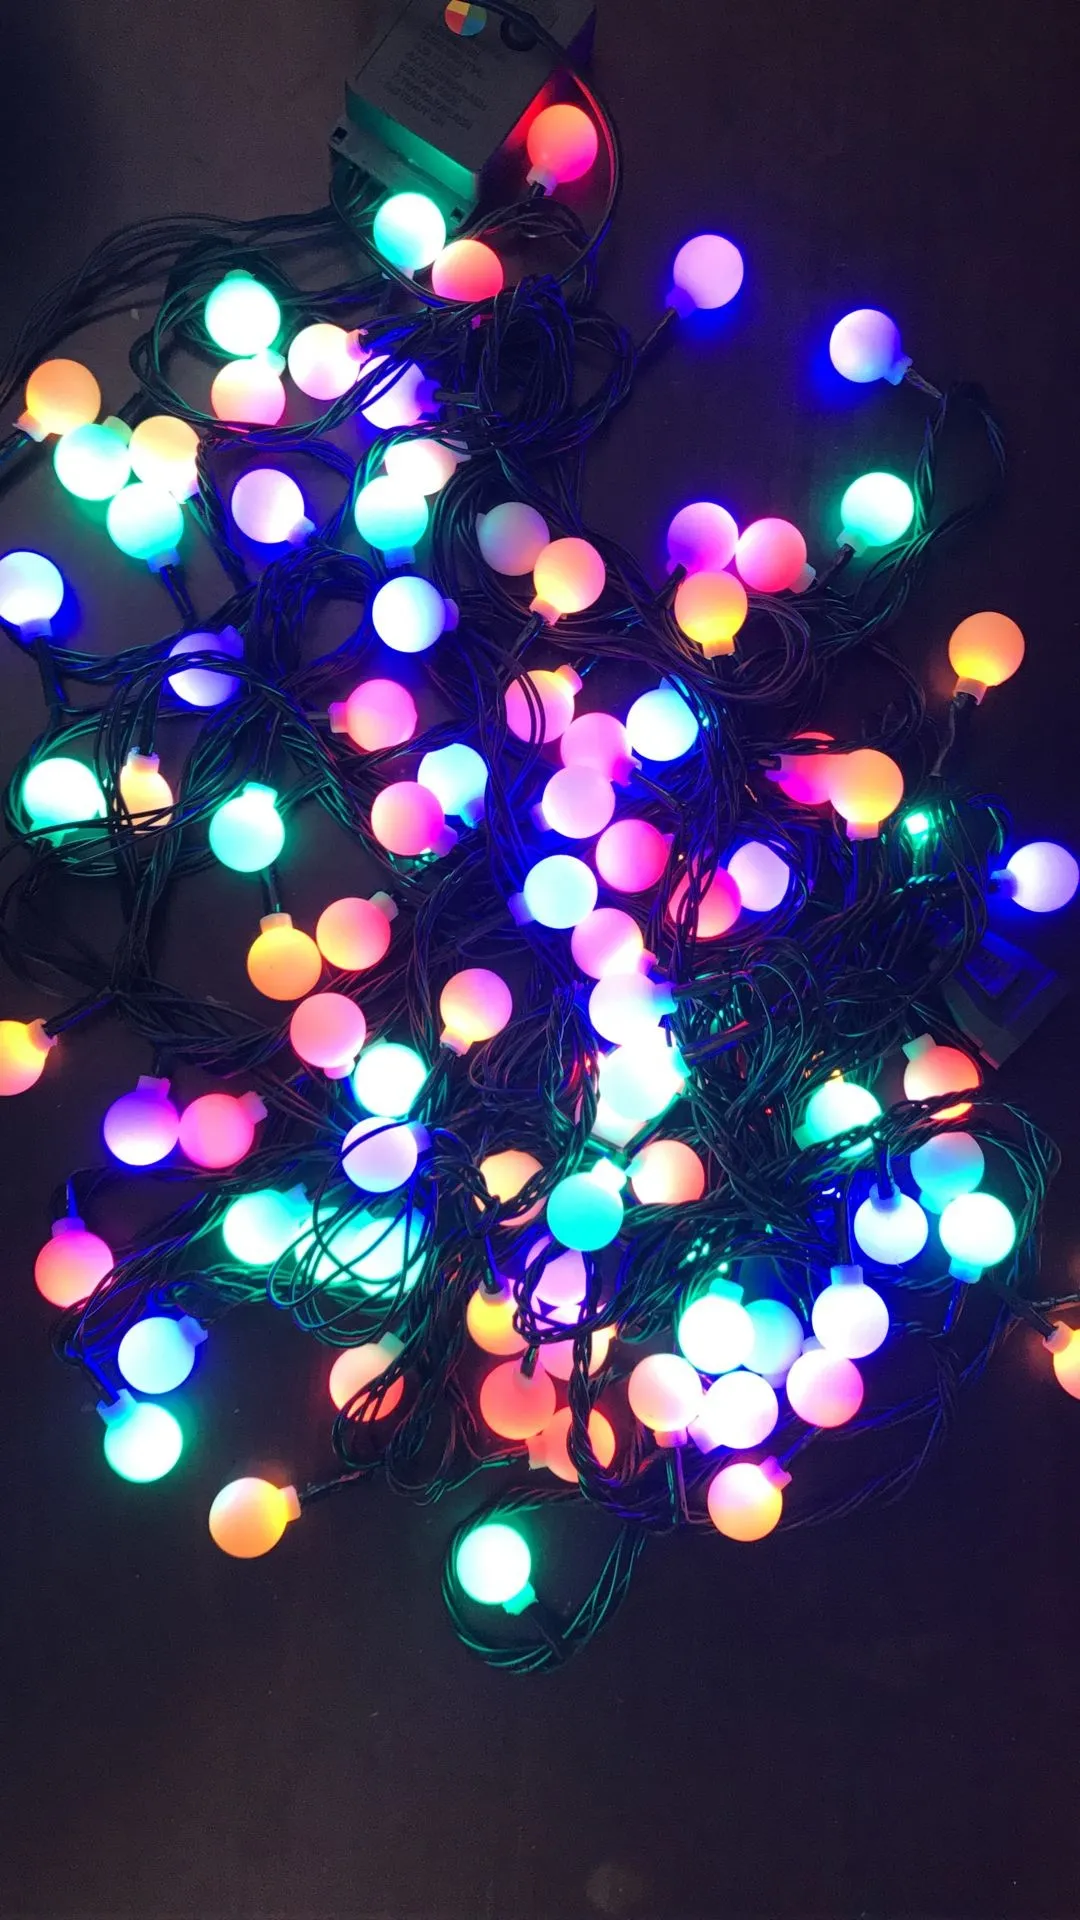 Lichterketten 10M100 Leds Kirschkugel Lichterketten LED Niedervolt Dunkelgrün Linie Sternenhimmel Patio Lichterketten Für die Außendekoration